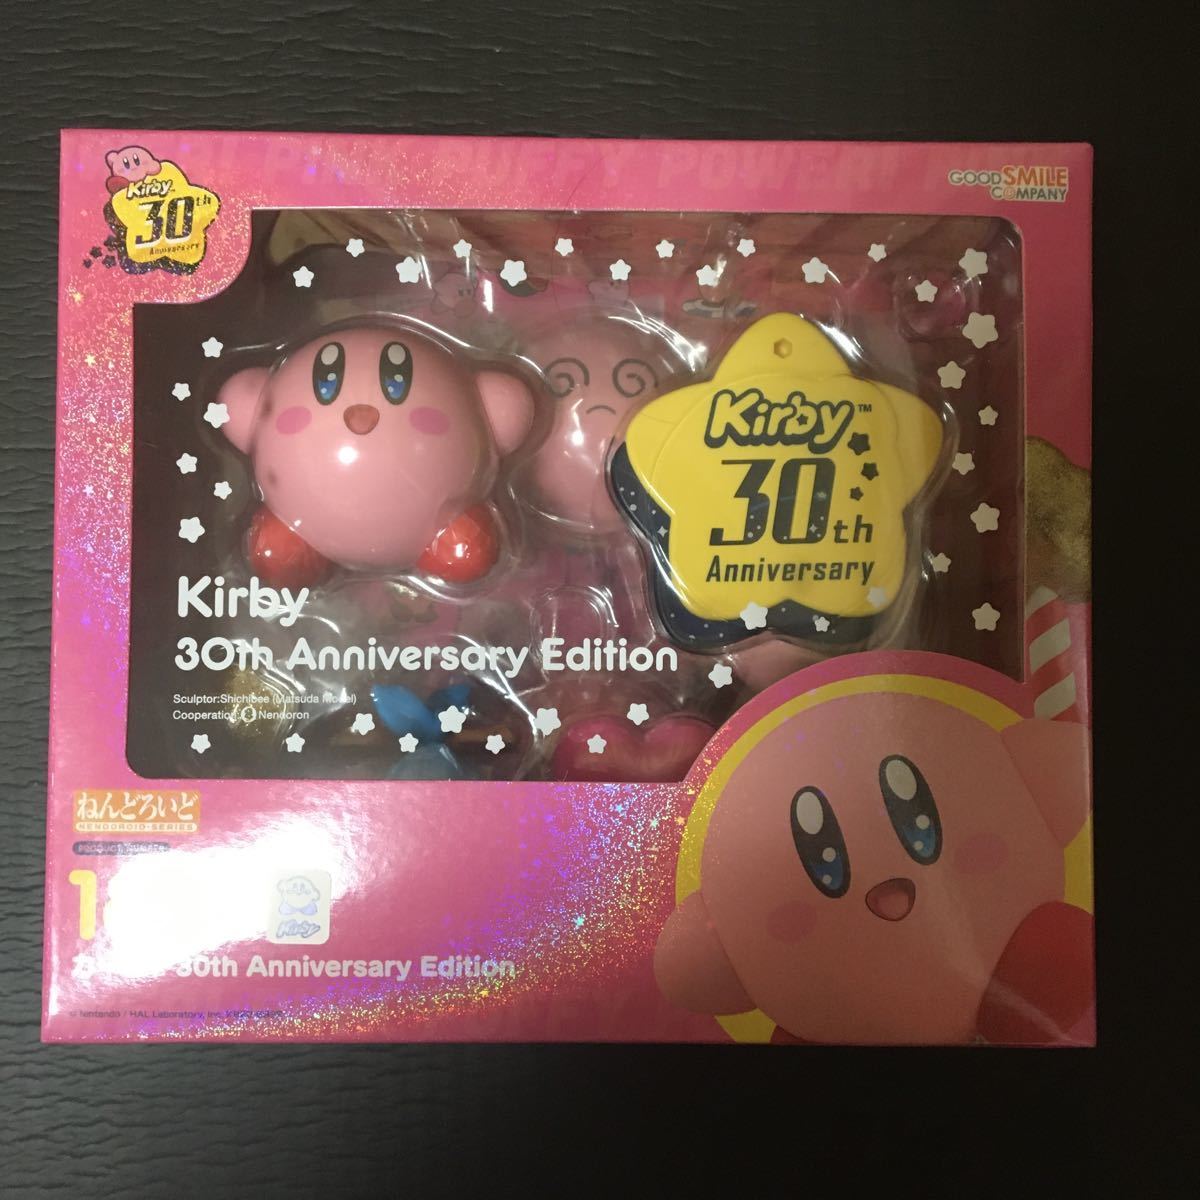 【新品未開封】ねんどろいど 星のカービィ 30th Anniversary Edition グッドスマイルカンパニー Kirby GOOD SMILE COMPANY フィギュア_画像1